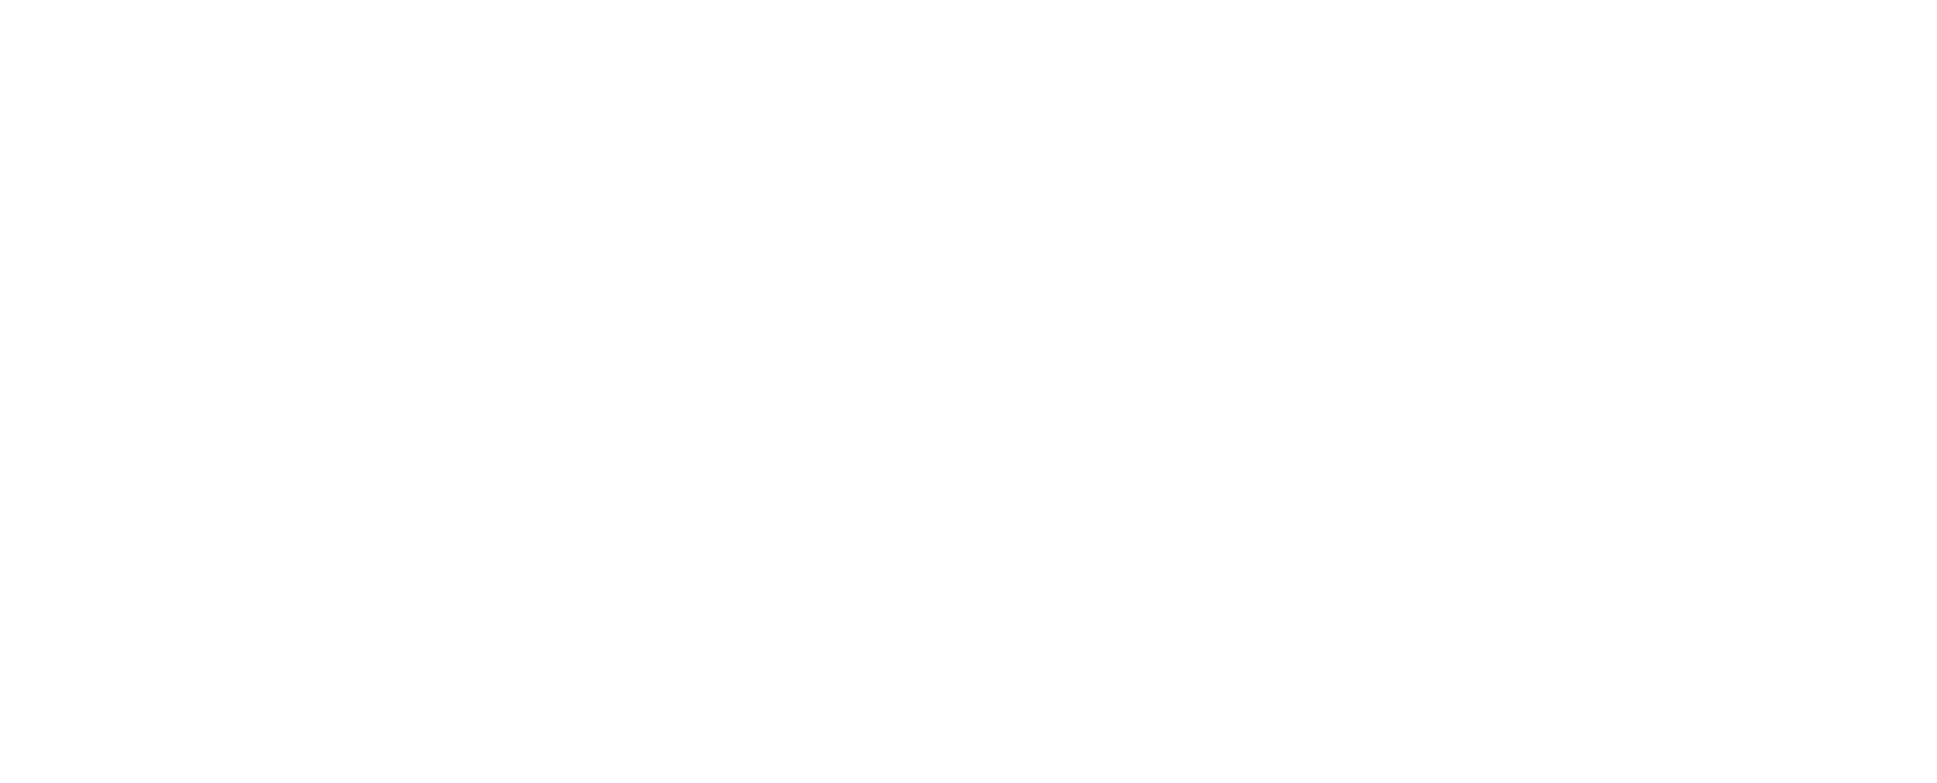 Logo Adecco partenaire officiel du Tour de France 2022